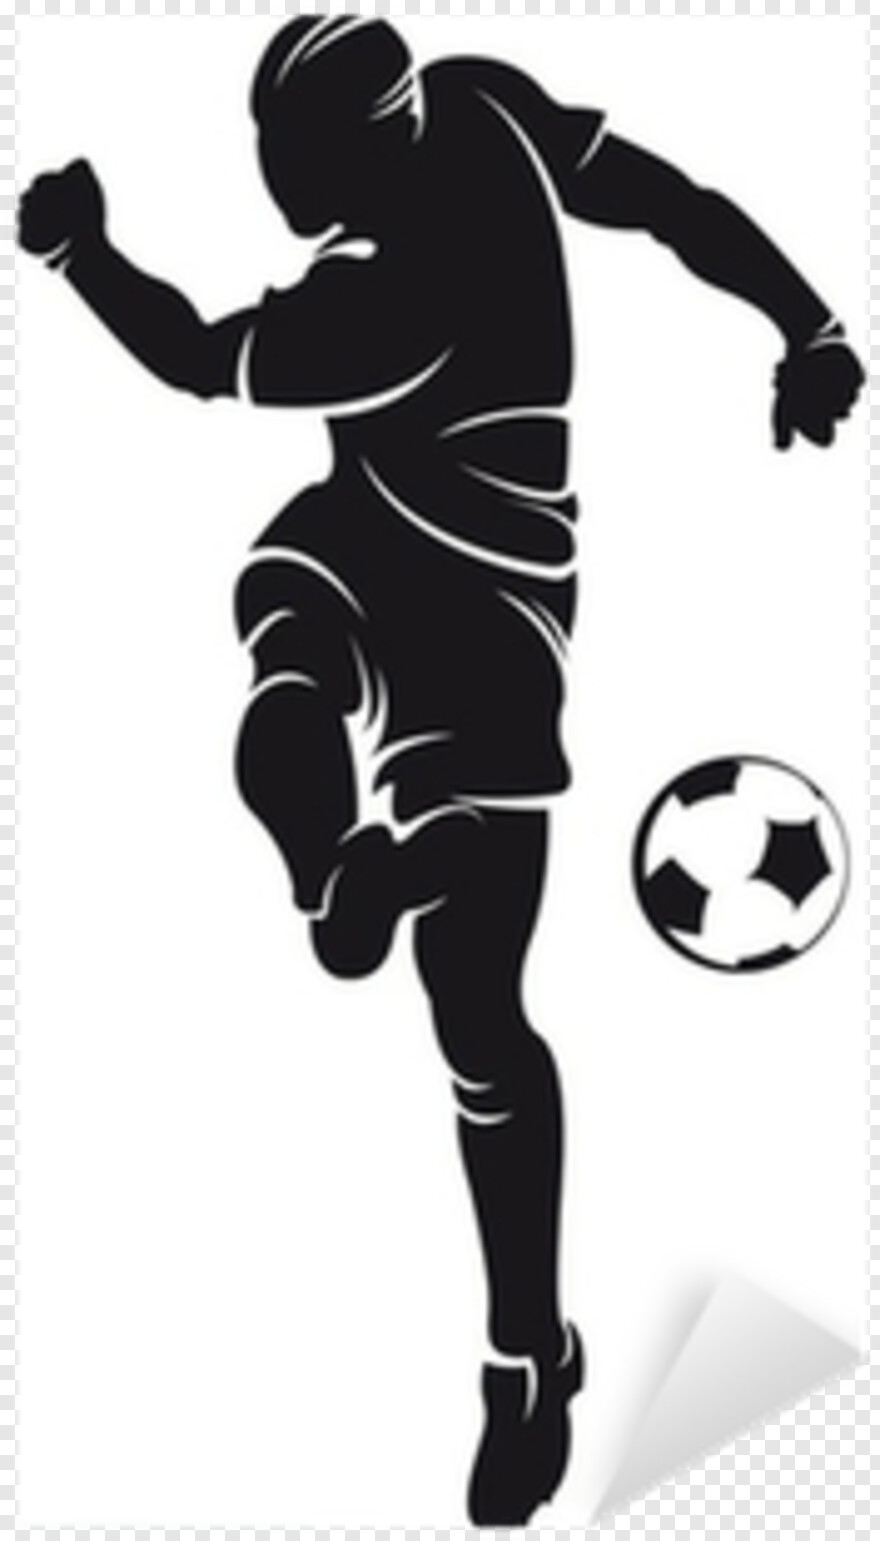  American Football Player, Dragon Ball Logo, Football Player Silhouette, Football Player, Football Player Clipart, Christmas Ball